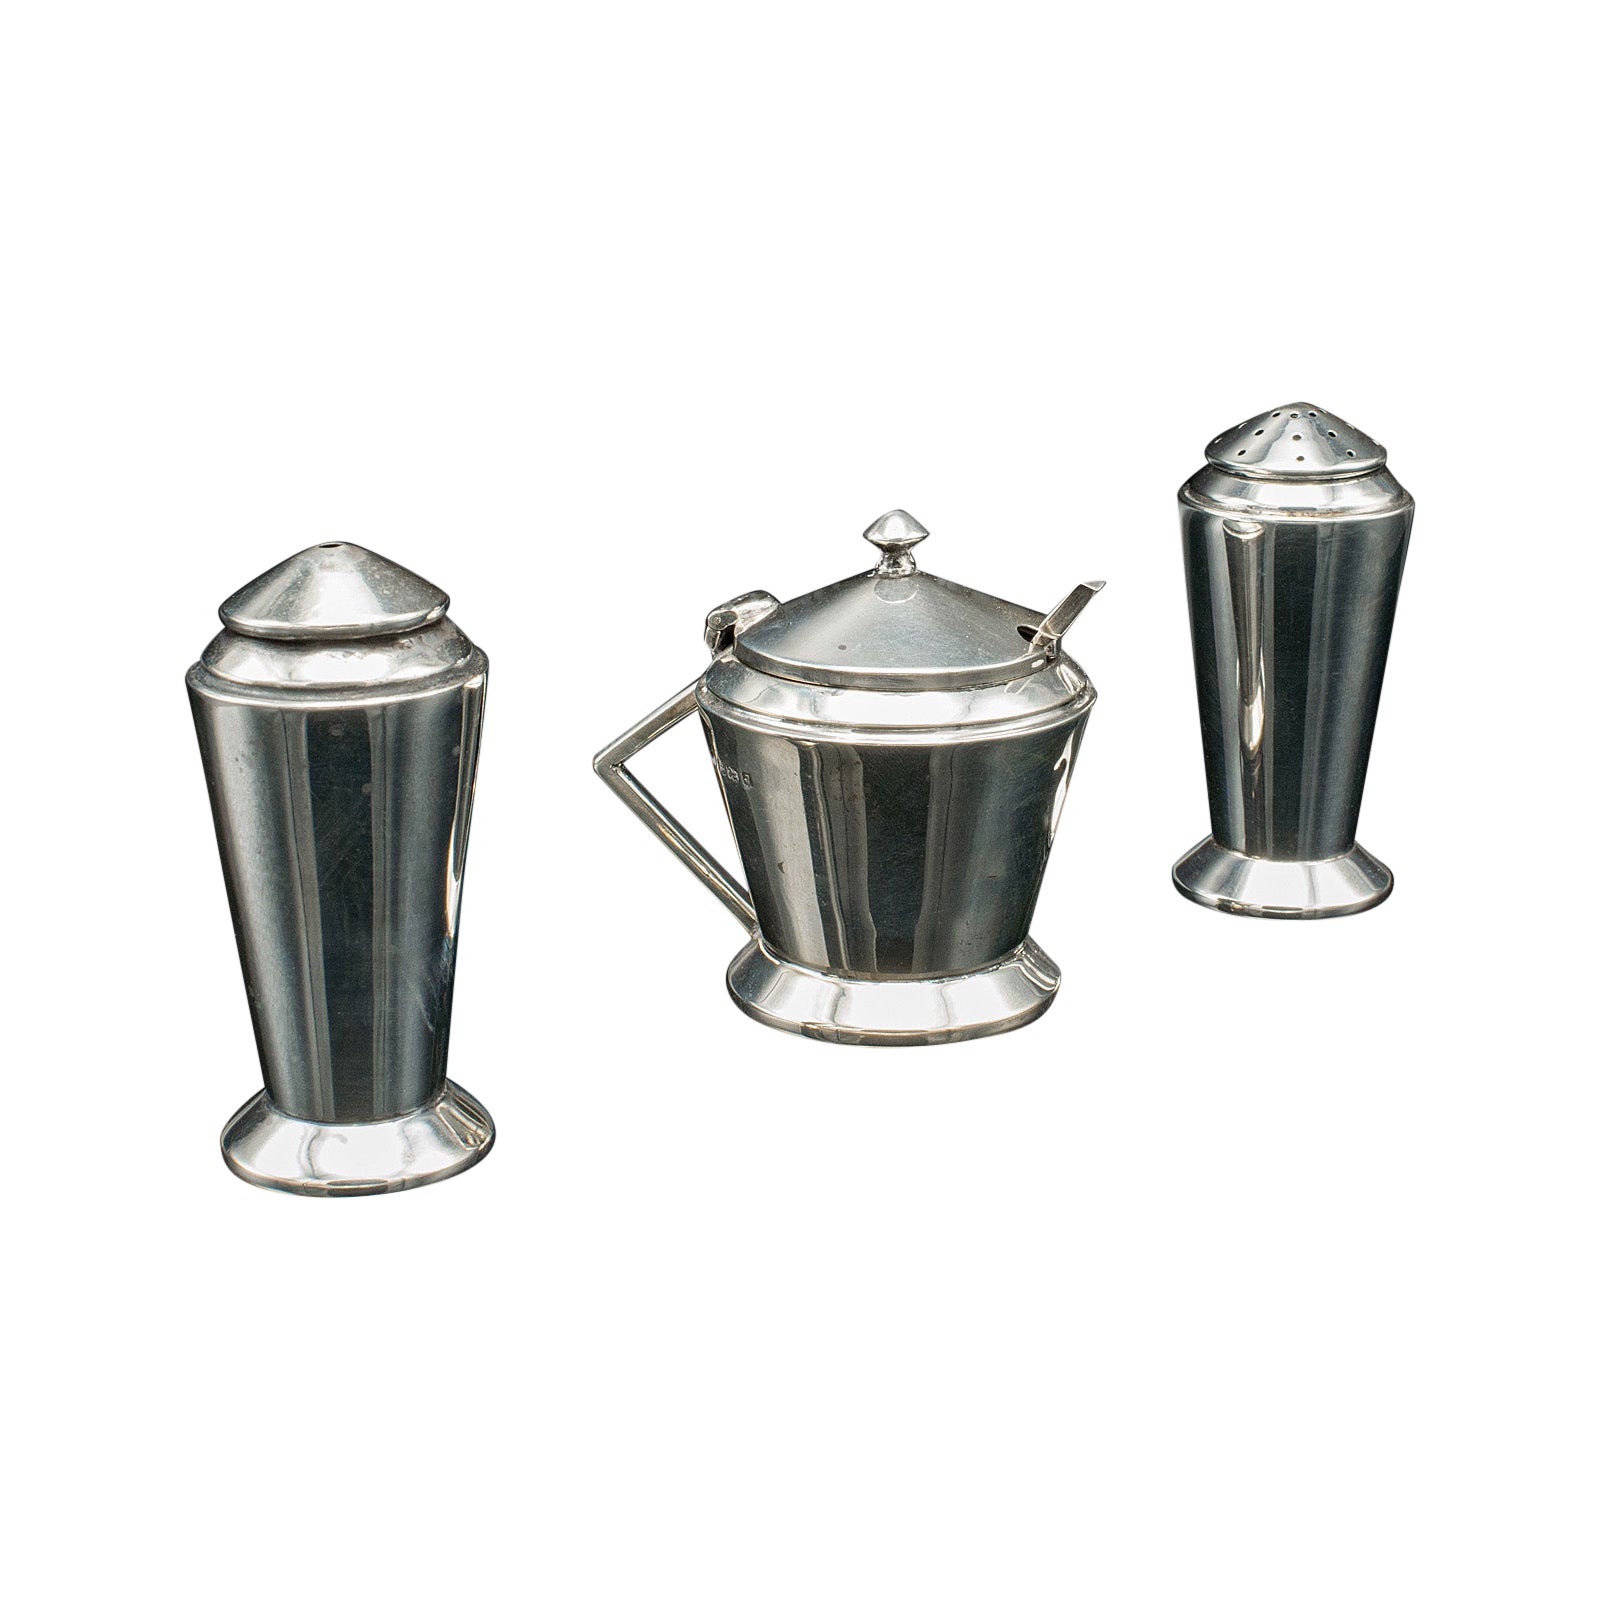 Vintage Condiment Set, English, Silver, Salt, Pepper Shaker, Sauce Pot, Art Deco